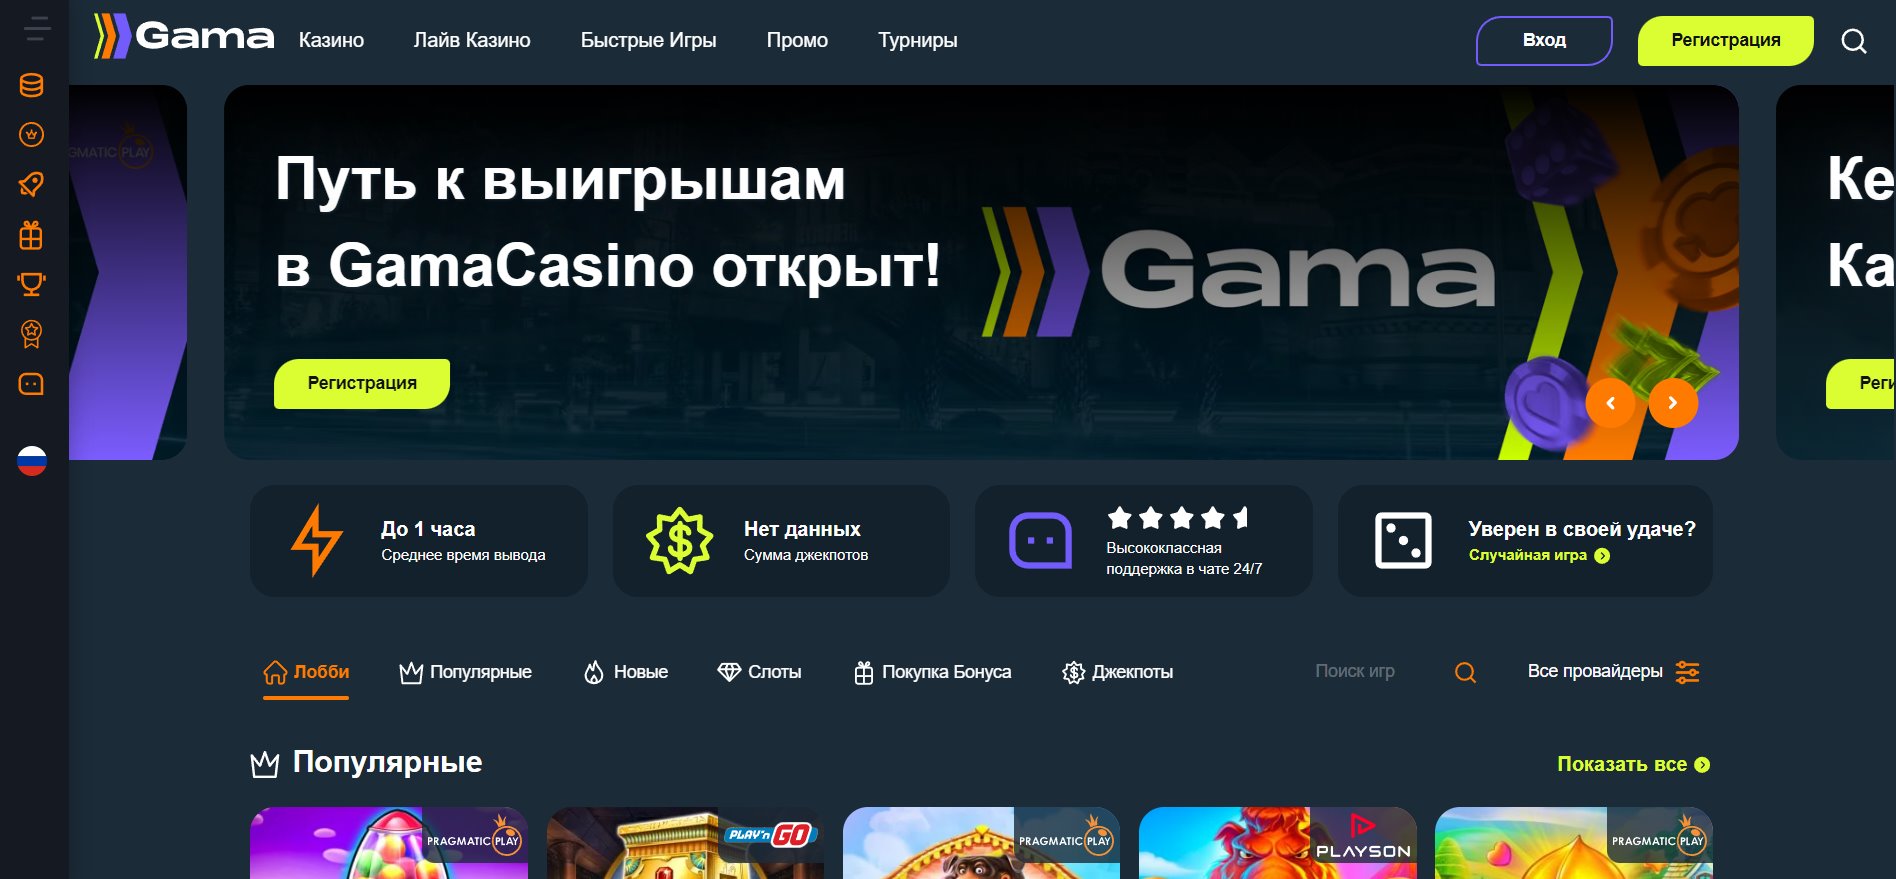 Зеркальный сайт казино Гама